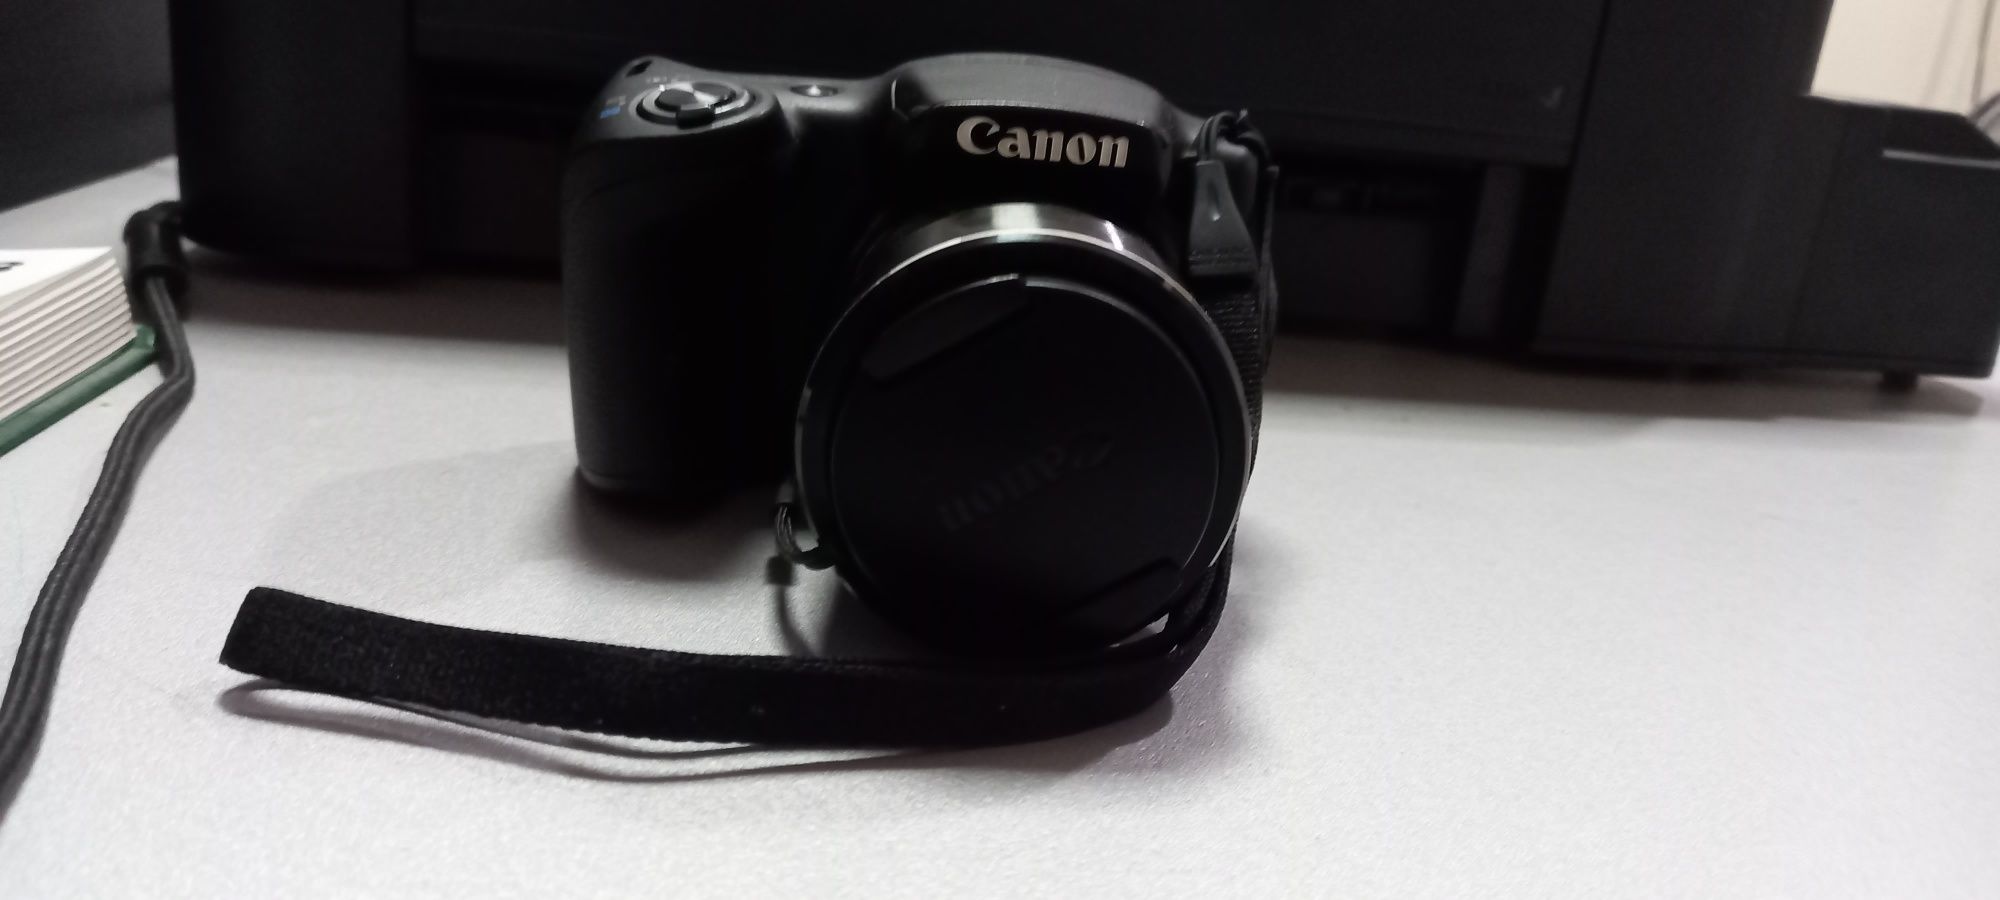 Компактный цифровой фотоаппарат canon powershot SX 430 IS